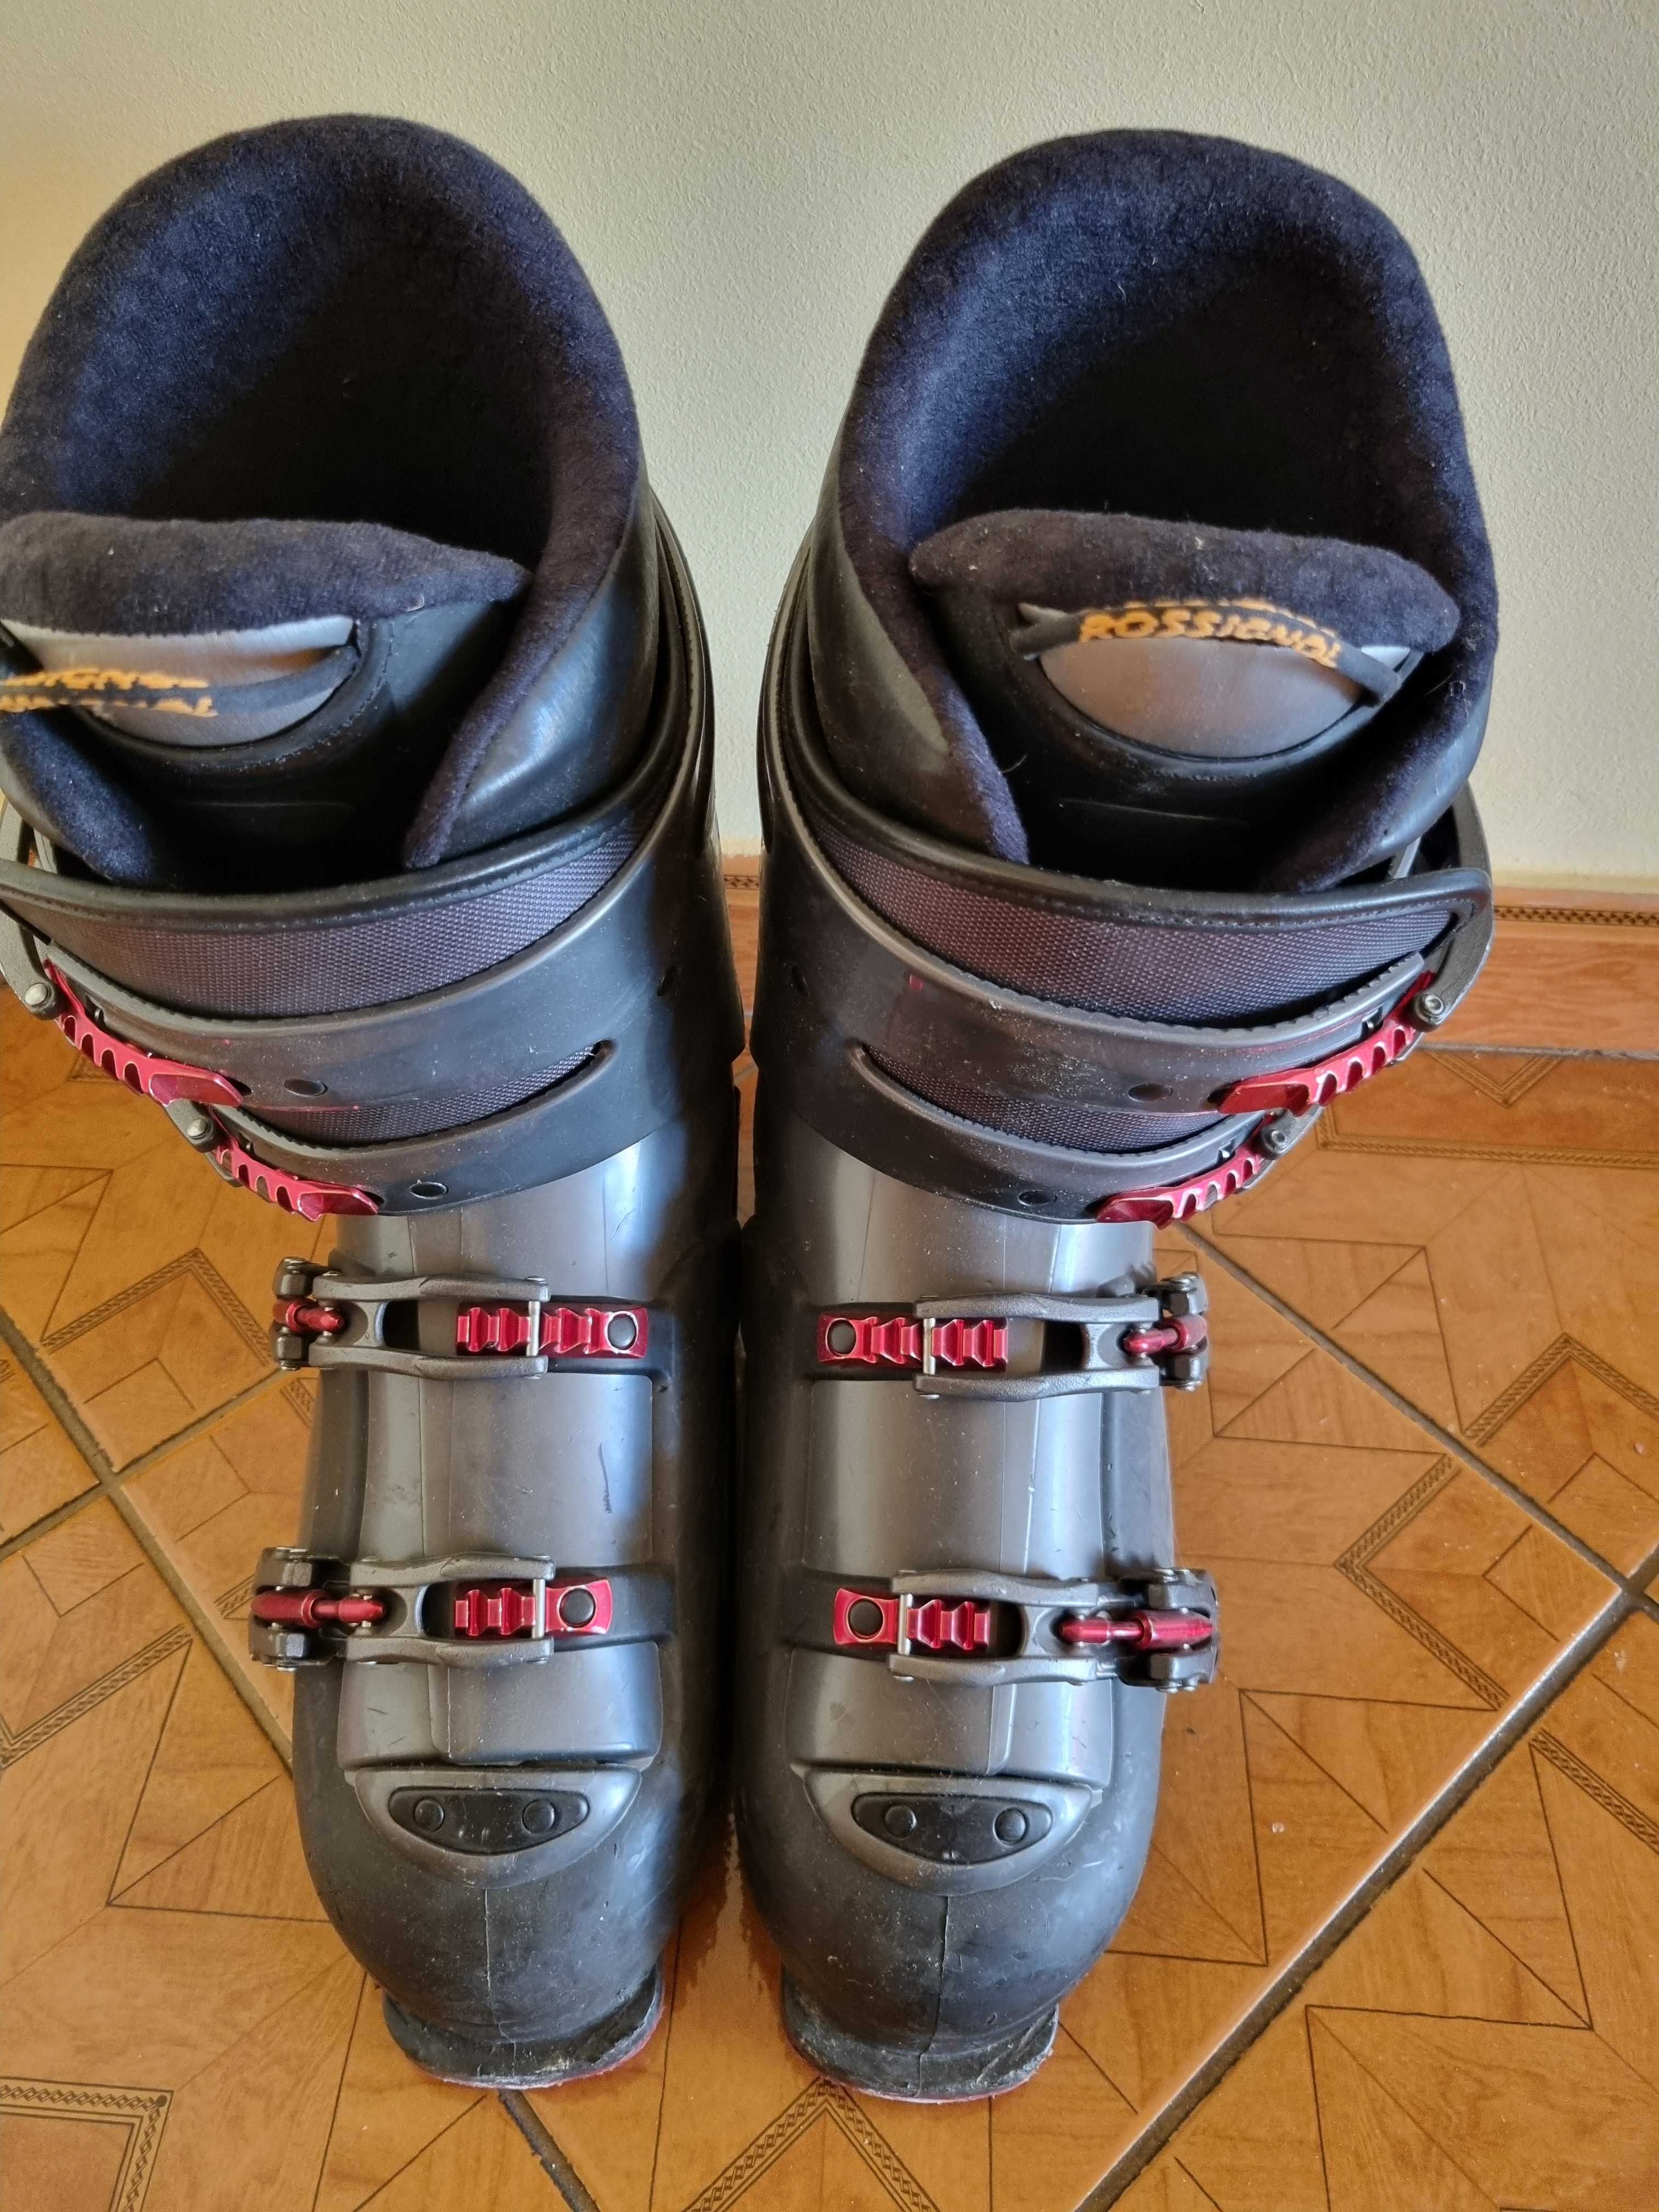 Narty Atomic 160 cm plus buty narciarskie Rossignol rozmiar 43